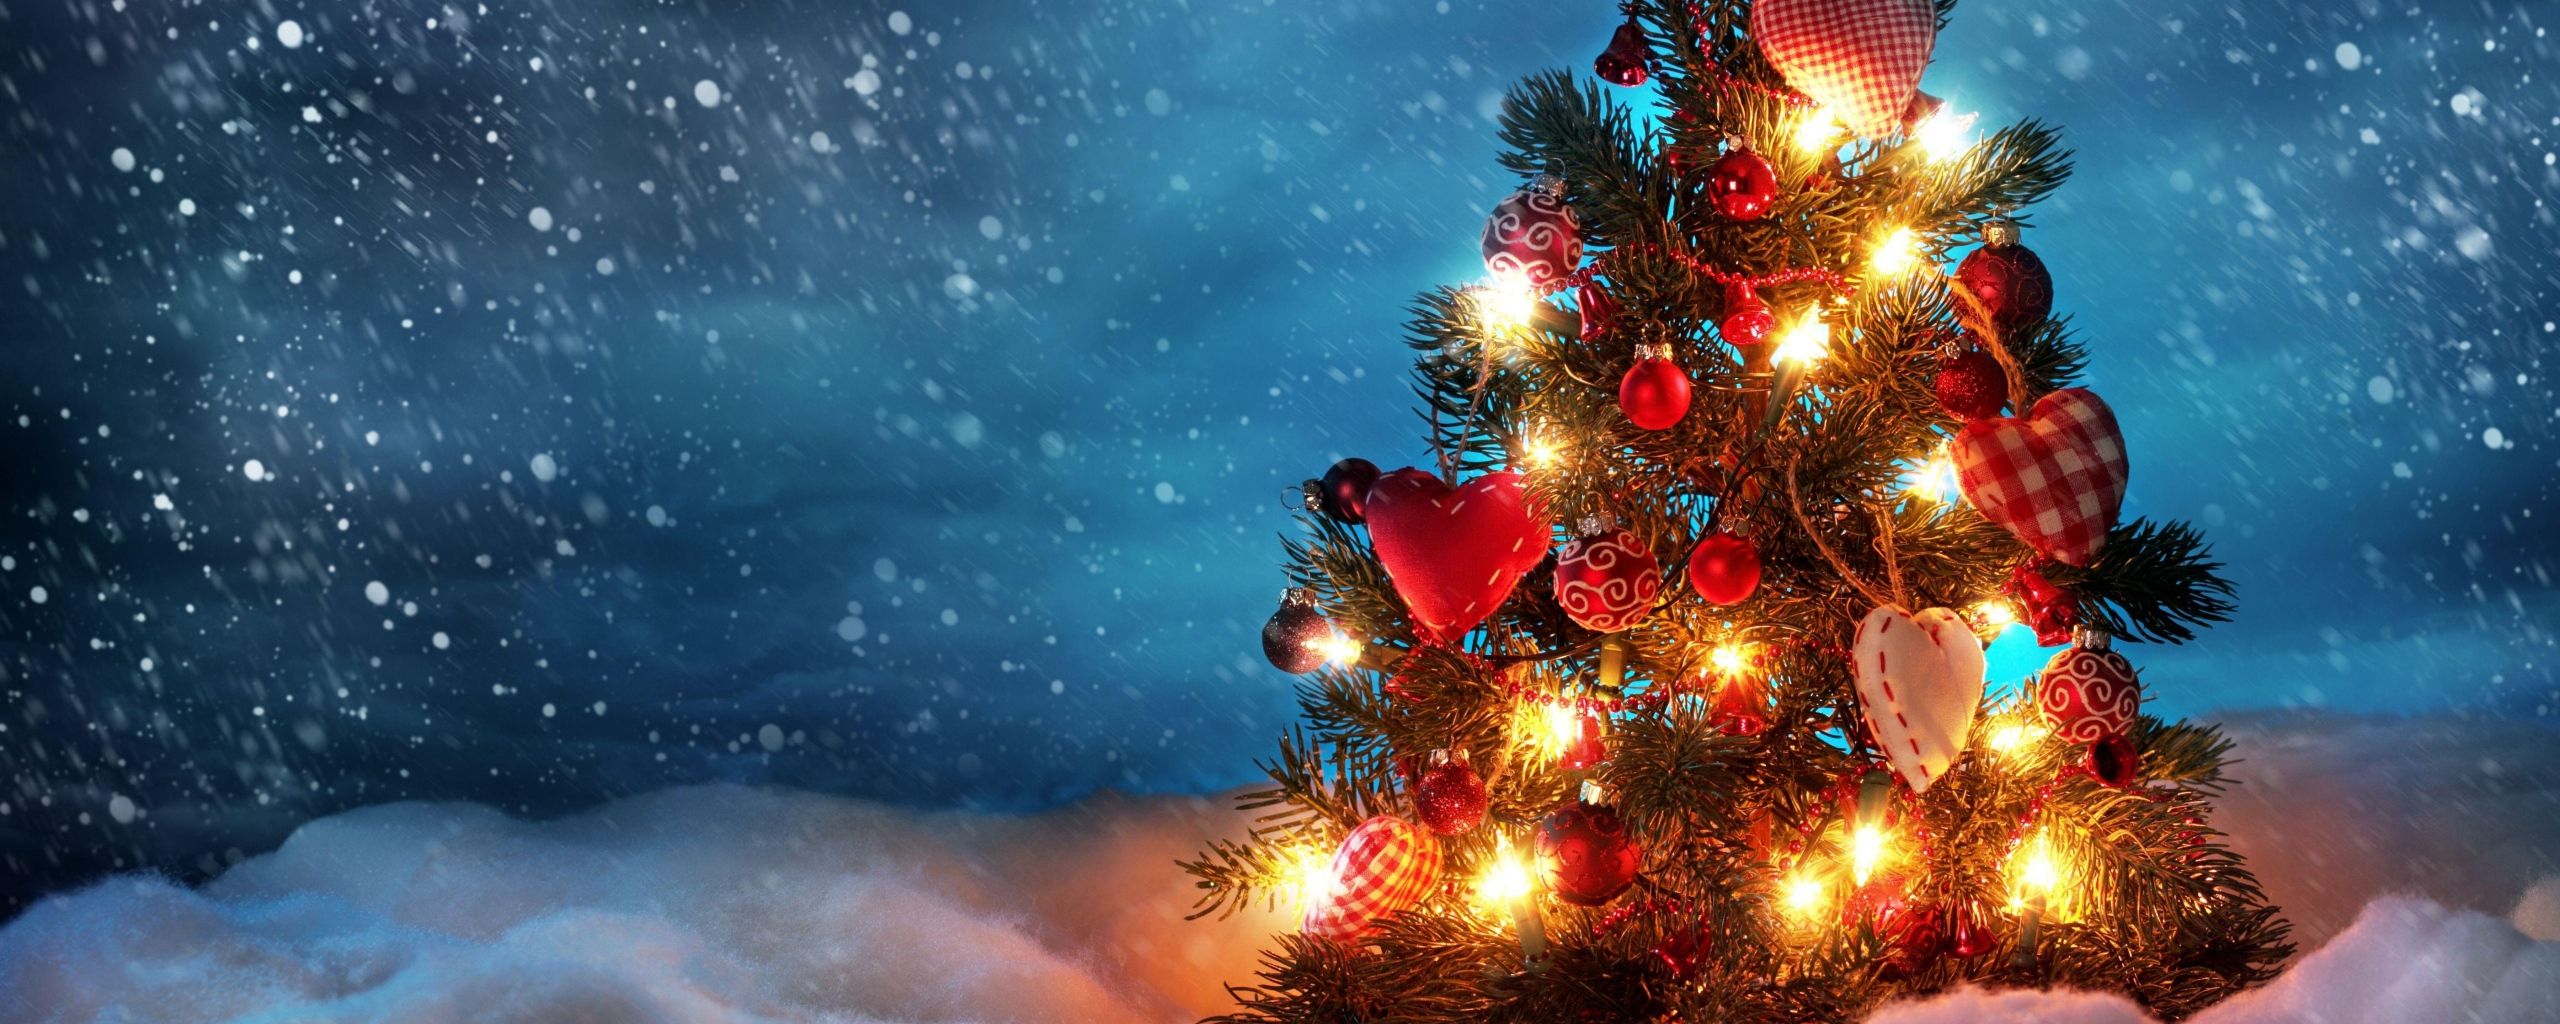 carta da parati di natale doppio monitor,albero di natale,albero,decorazione natalizia,natale,cielo